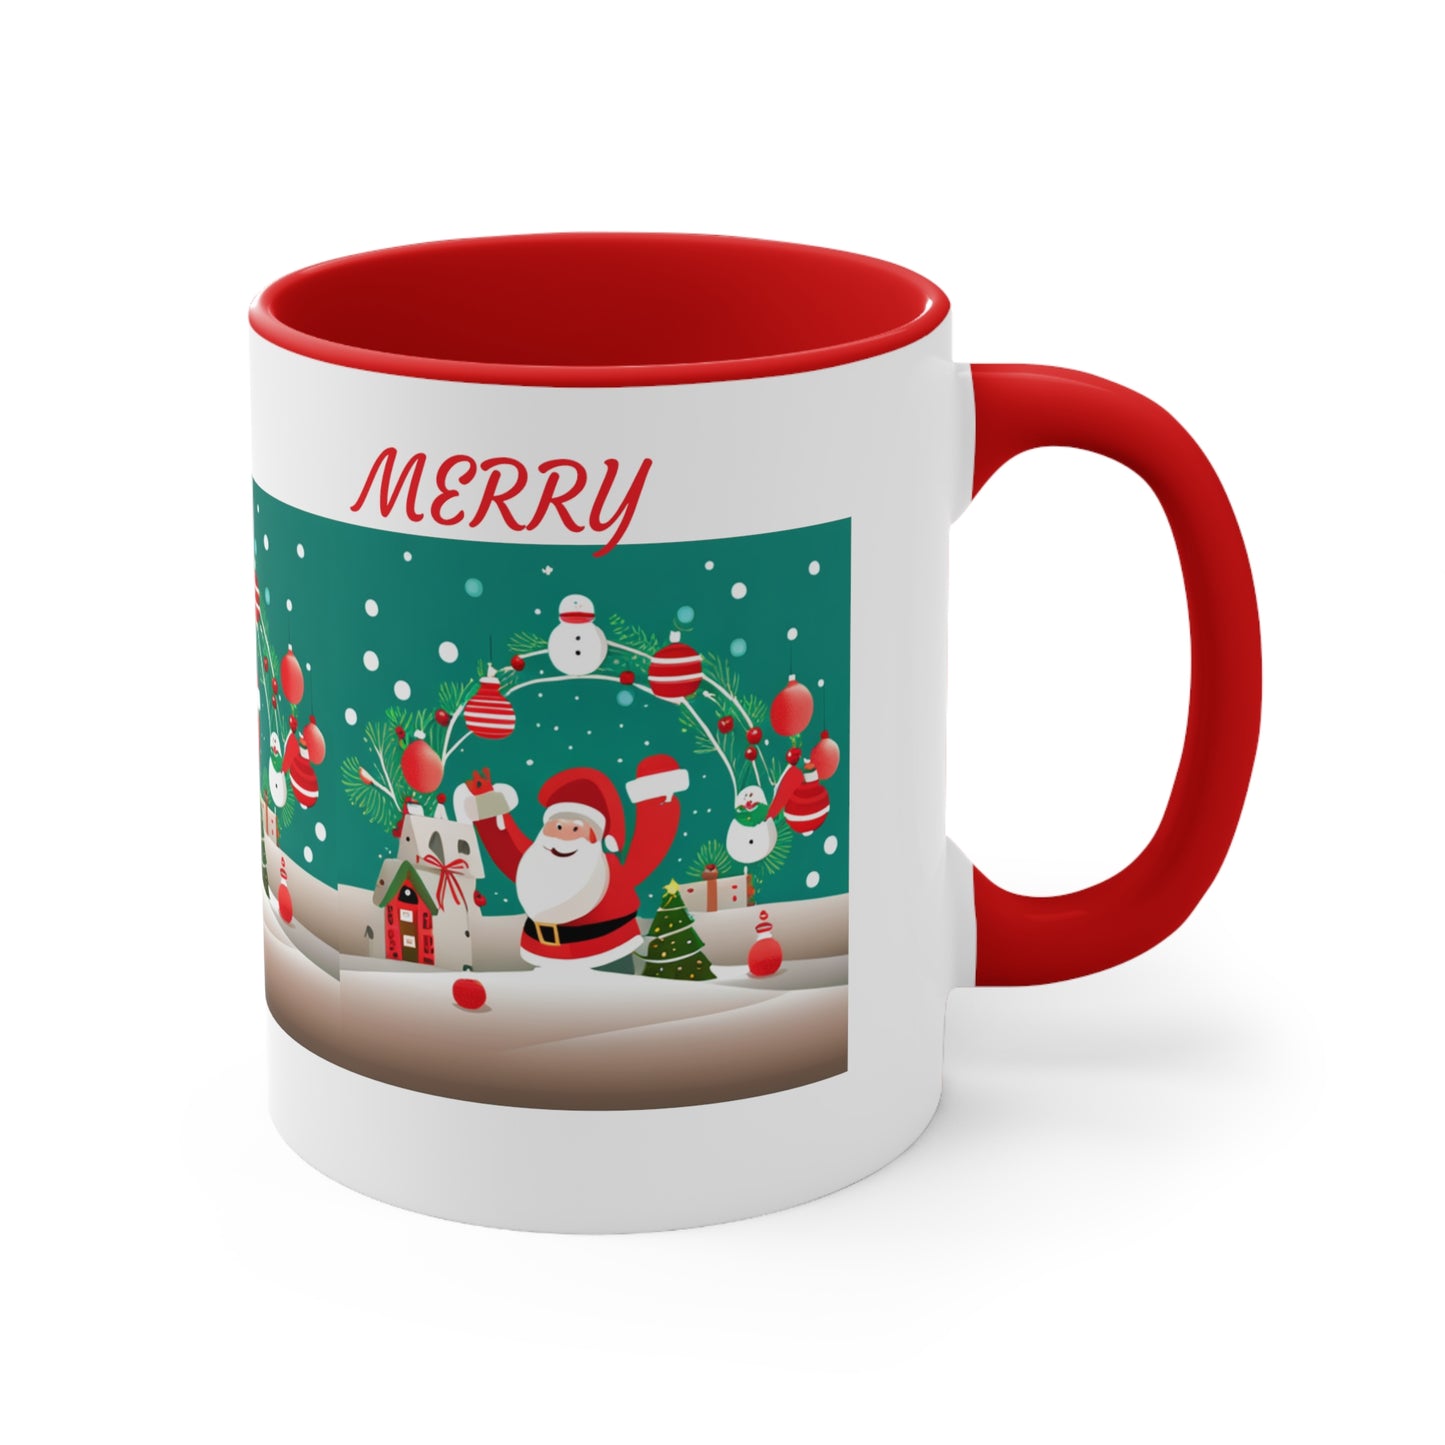 Merry Christmas Mug Accent Coffee Mug, Red and Green Mug for Christmas Decor 11oz